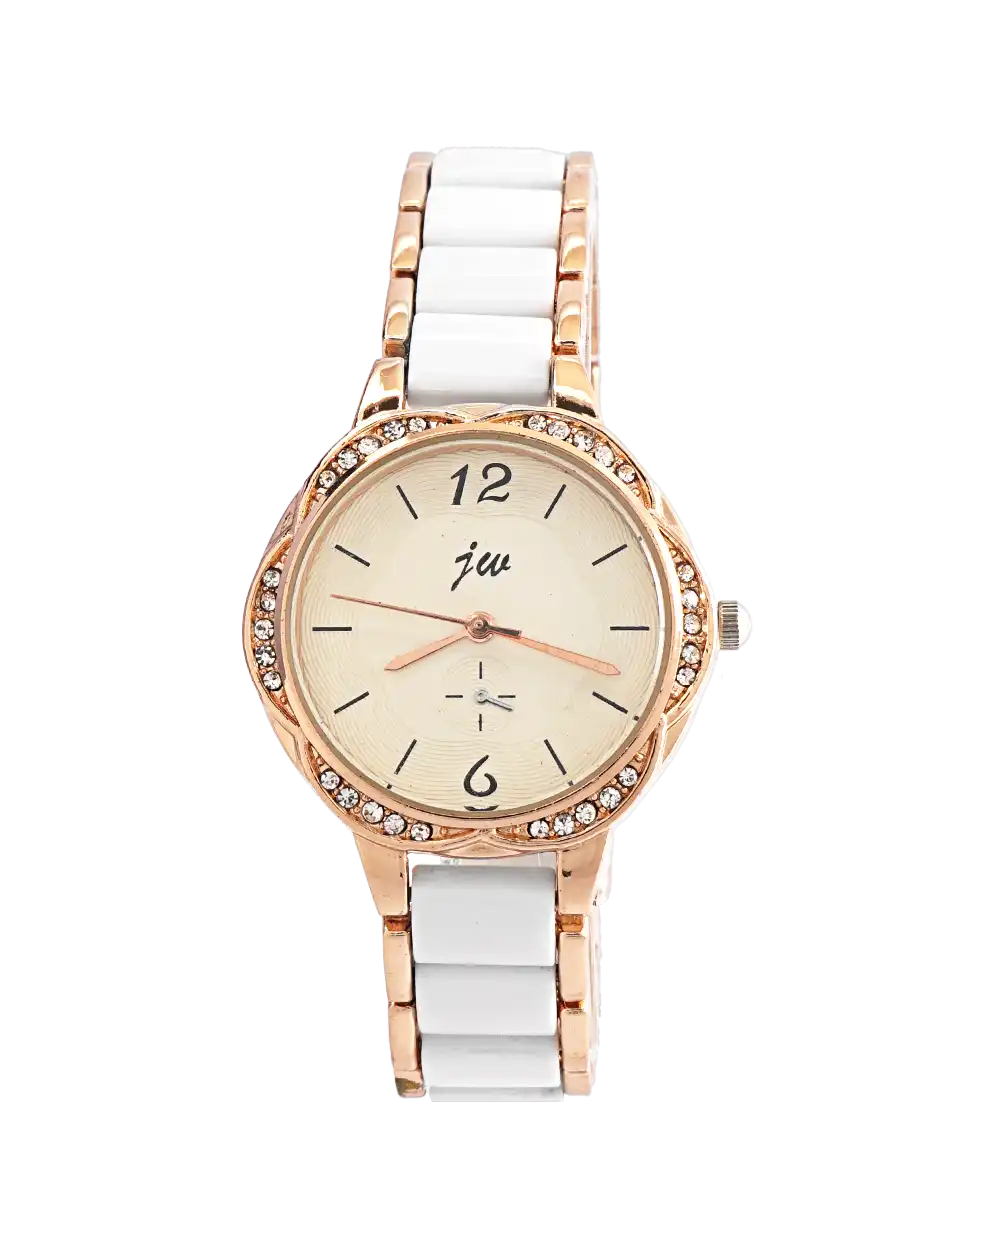 خرید ساعت مچی زنانه IW TIME مدل 1786 با بهترین قیمت مناسب برای خانم ها و دختر ها به رزگلد به همراه جعبه ی ساعت و ارسال رایگان به سراسر ایران